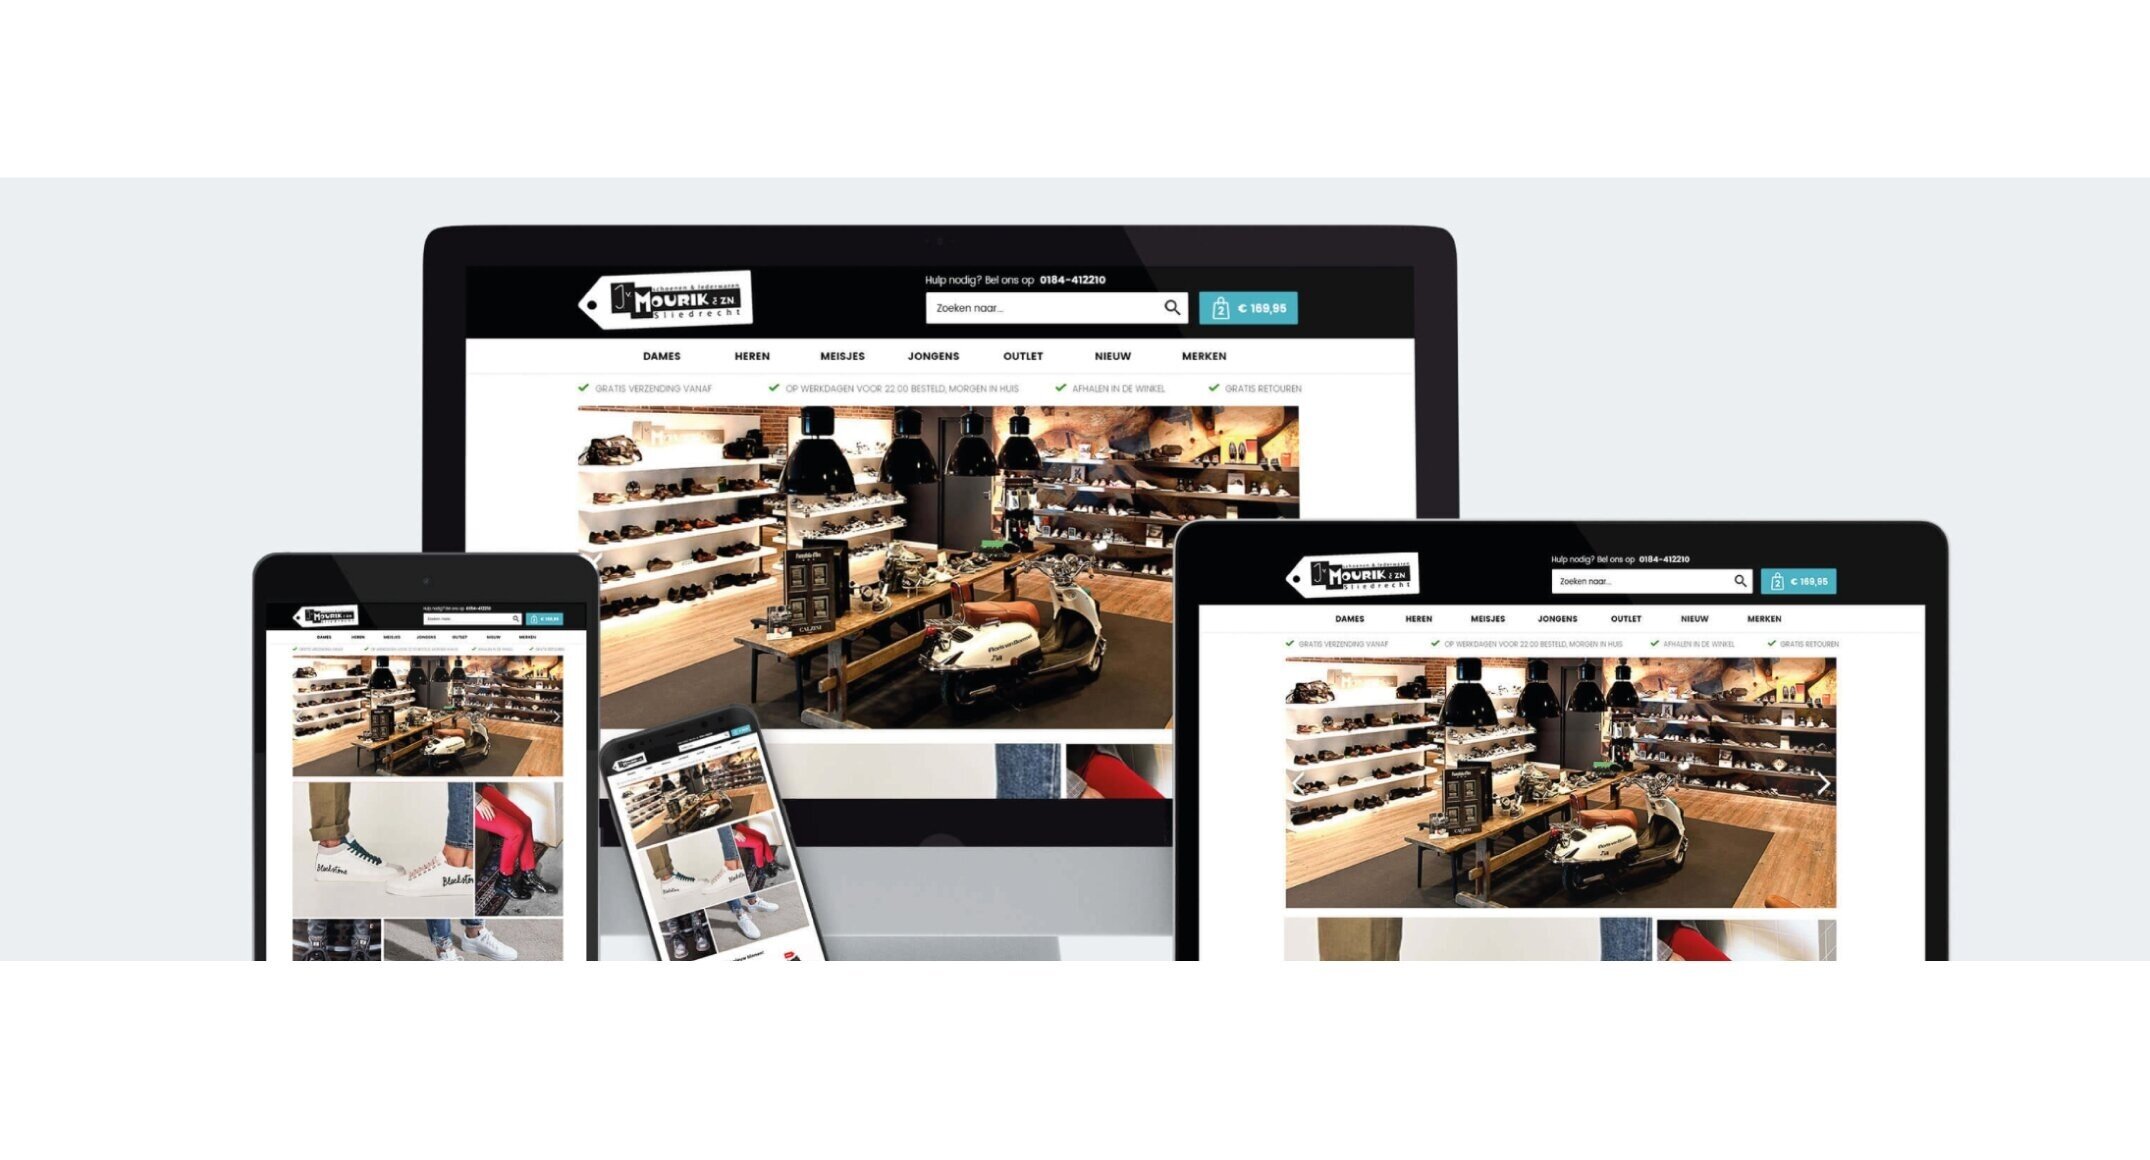 ANWR-GARANT biedt de oplossing aan retailers met een 'Retailer Webshop'